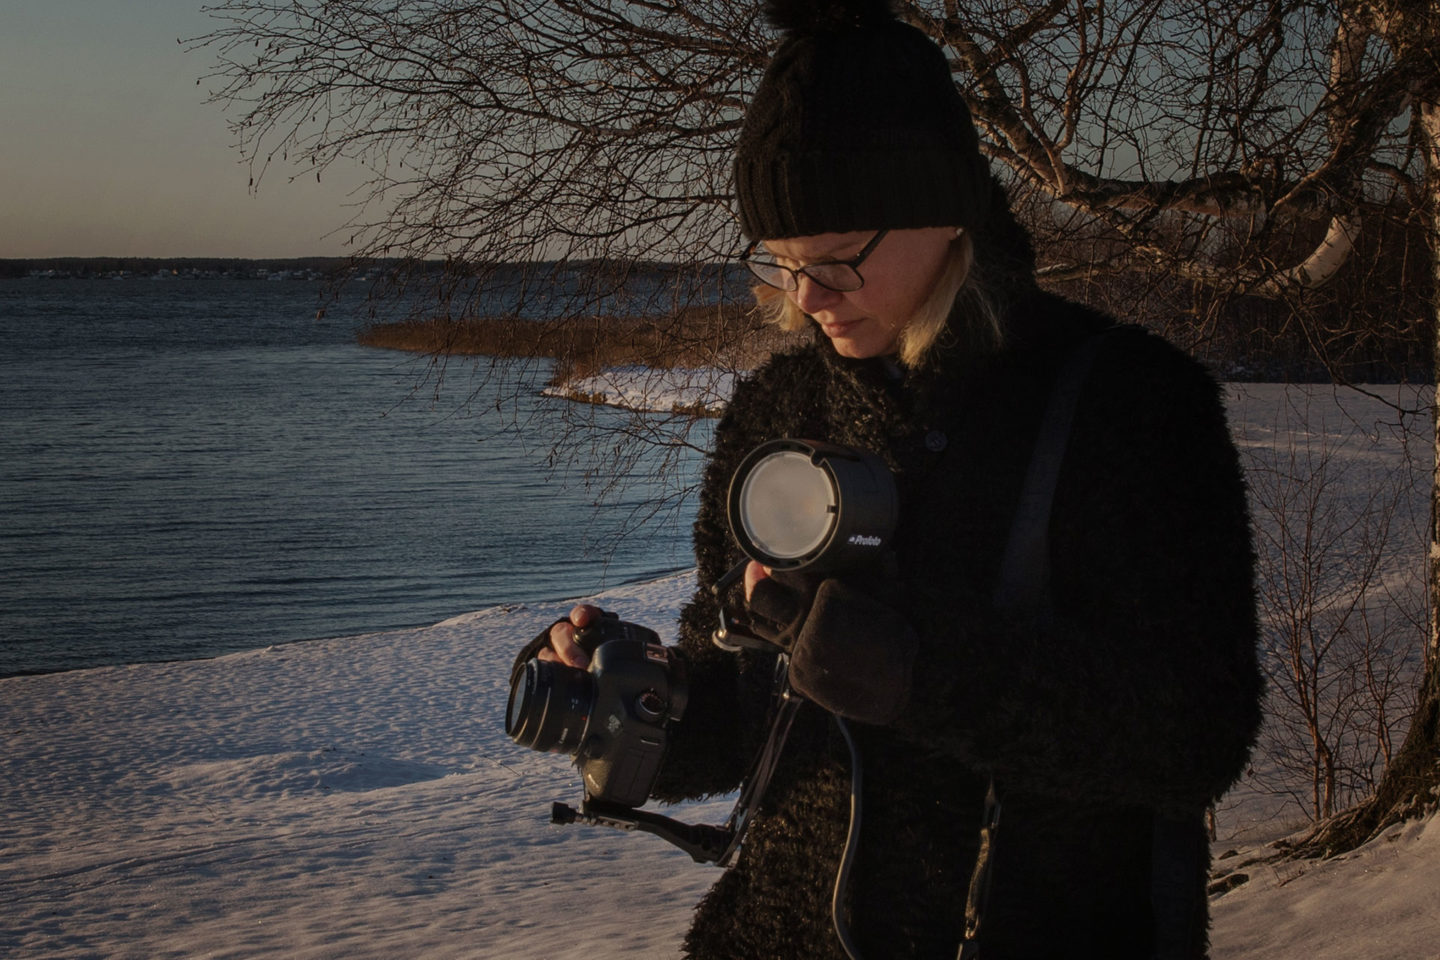 Profoto B2 Fotoblixtar
Företagsfotograf Helen Shippey i Västerås håller i kamera och blixt under fotografering i vintern